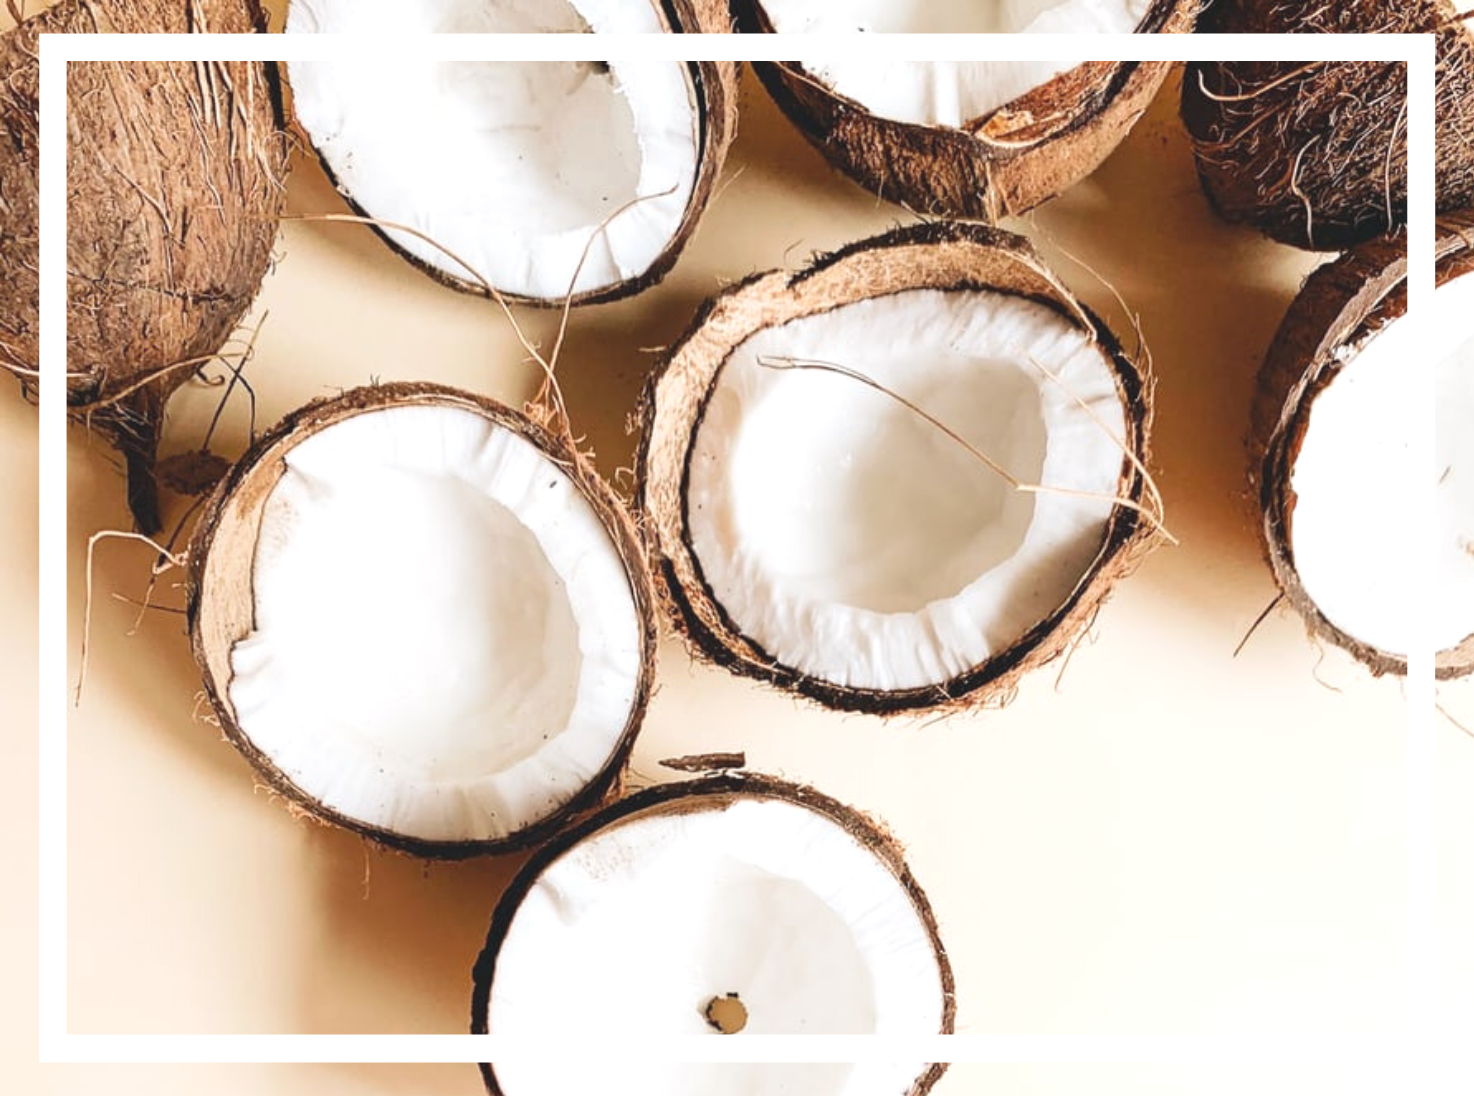 L'huile de coco est-elle vraiment bonne pour la santé ? Aujourd'hui on démêle le vrai du faux.